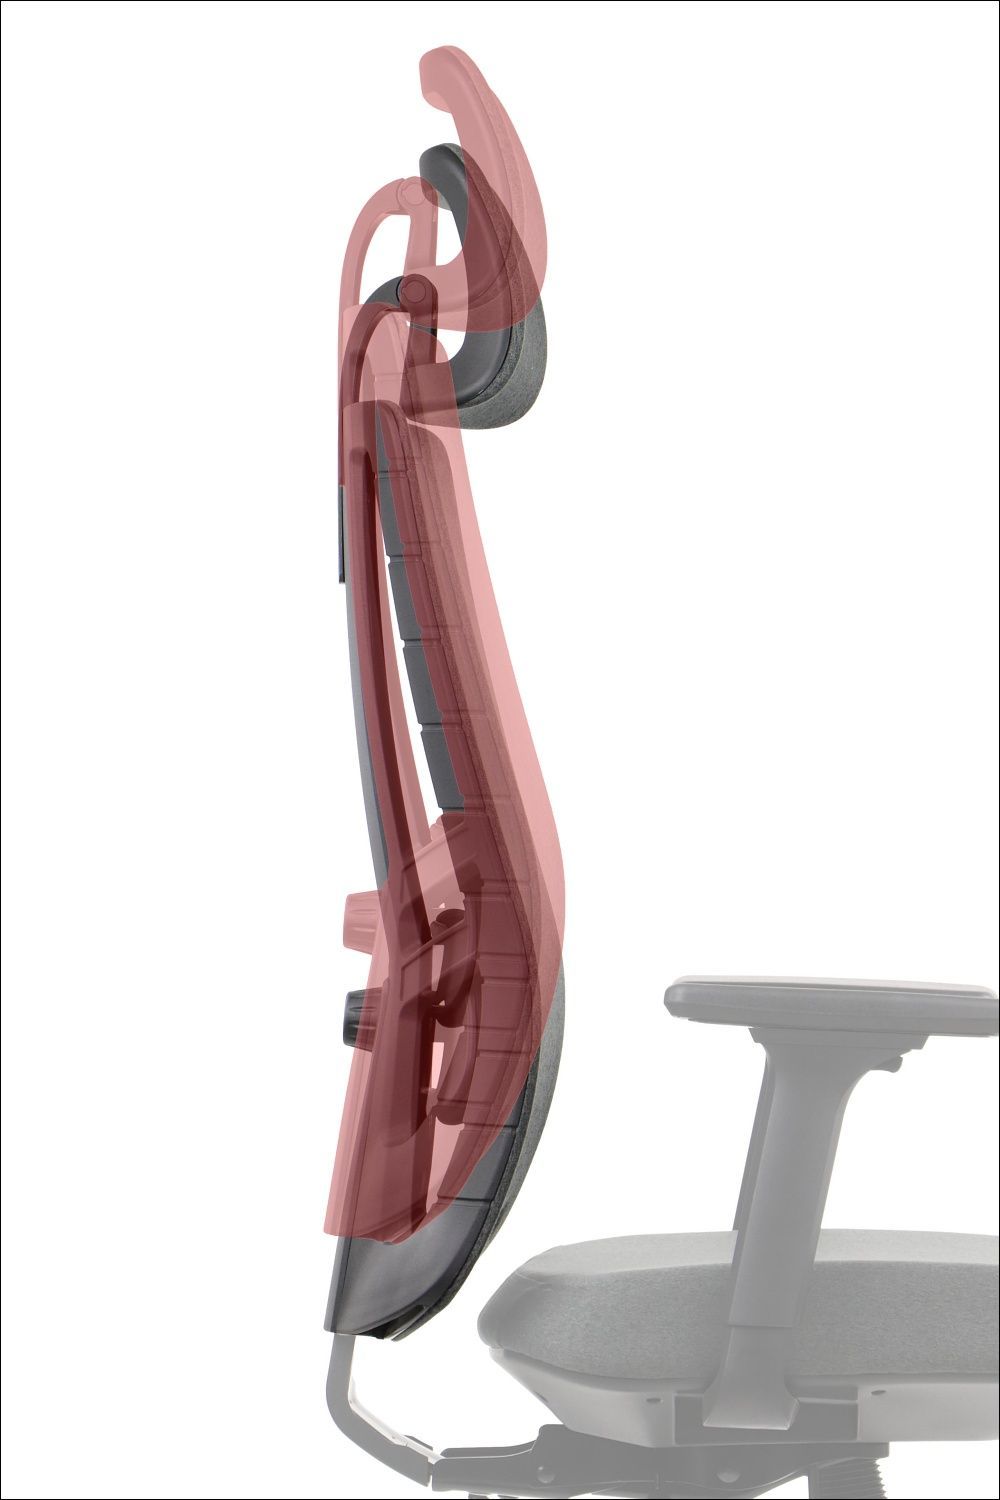 Fotel obrotowy AKCENT to nowoczesny i ergonomiczny mebel, stworzony z myślą o komforcie i wydajności w miejscu pracy. Zapewnia wiele regulowanych funkcji, które umożliwiają dostosowanie fotela do indywidualnych preferencji użytkownika. Fotel obrotowy posiada tapicerowane siedzisko wykonane z wysokiej jakości tkaniny. Ta trwała tapicerka zapewnia nie tylko wygląd, ale także wygodę podczas pracy. Ponadto, regulacja głębokości odcinka lędźwiowego pozwala na dostosowanie podparcia do postawy, co zapewnia większy komfort. A to nie wszystko, poniżej szczegółowy opis funkcji, które posiada fotel biurowy AKCENT F. Zapraszamy do zapoznania się.